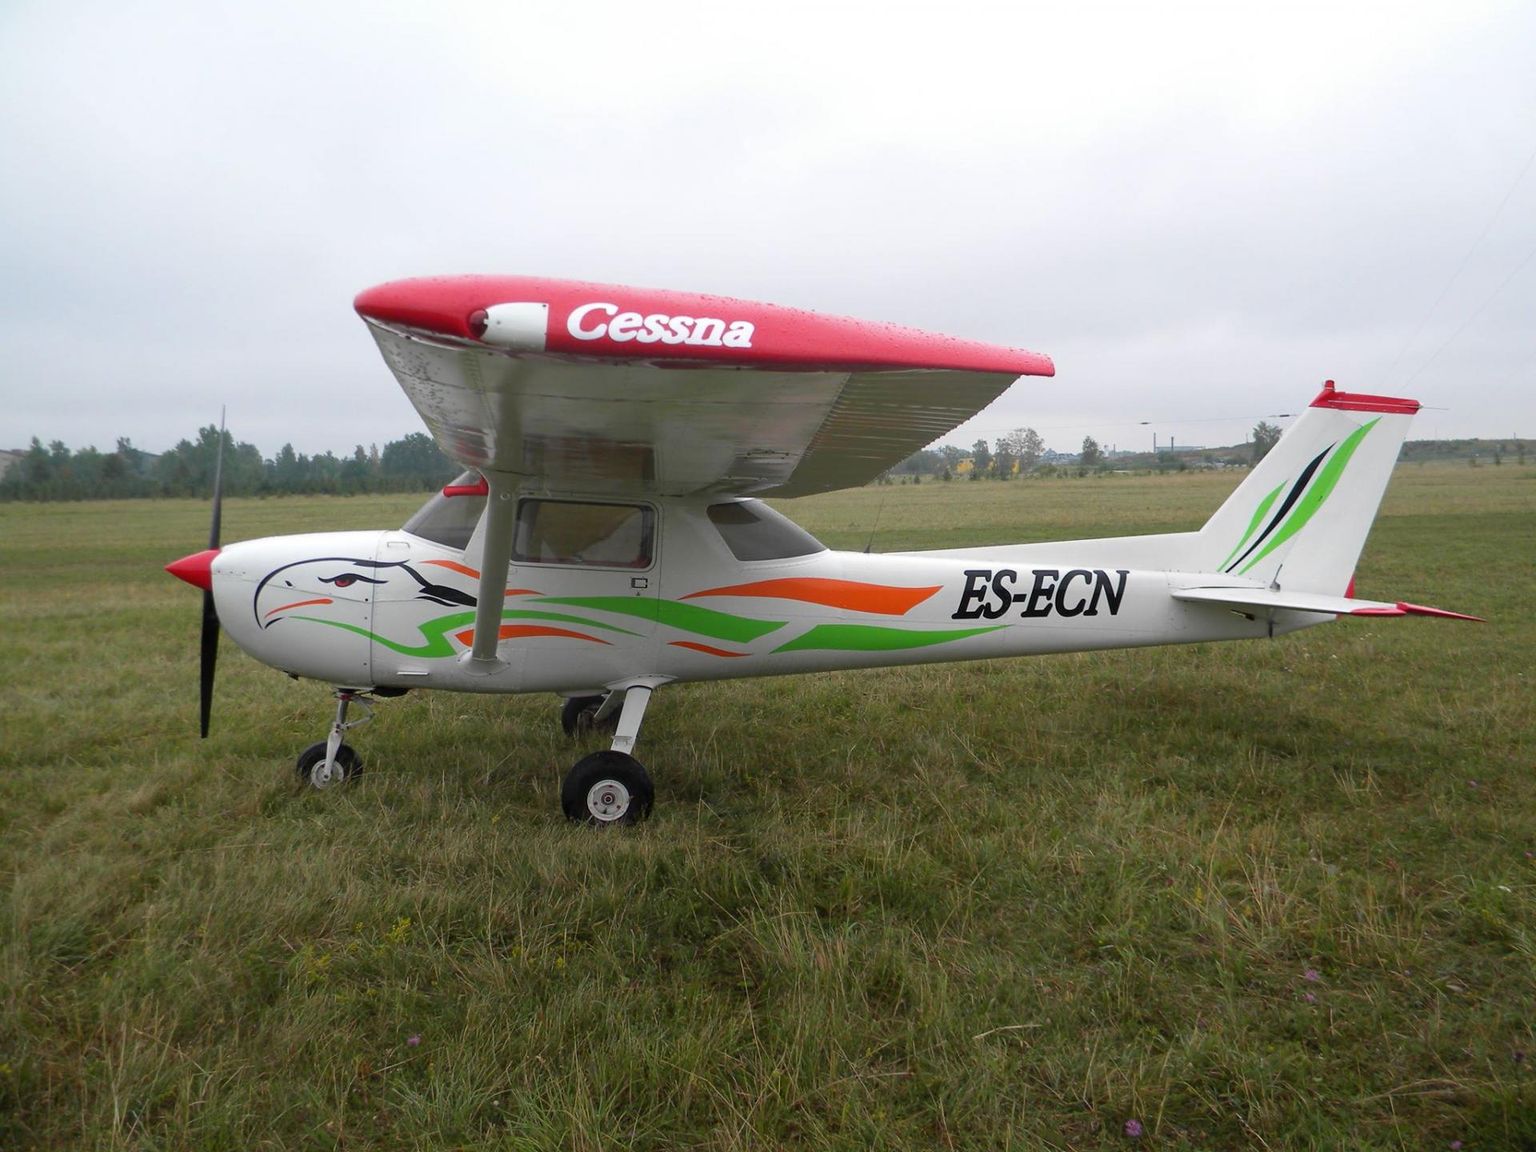 Vladimir Antonovi uus lennuk Cessna.